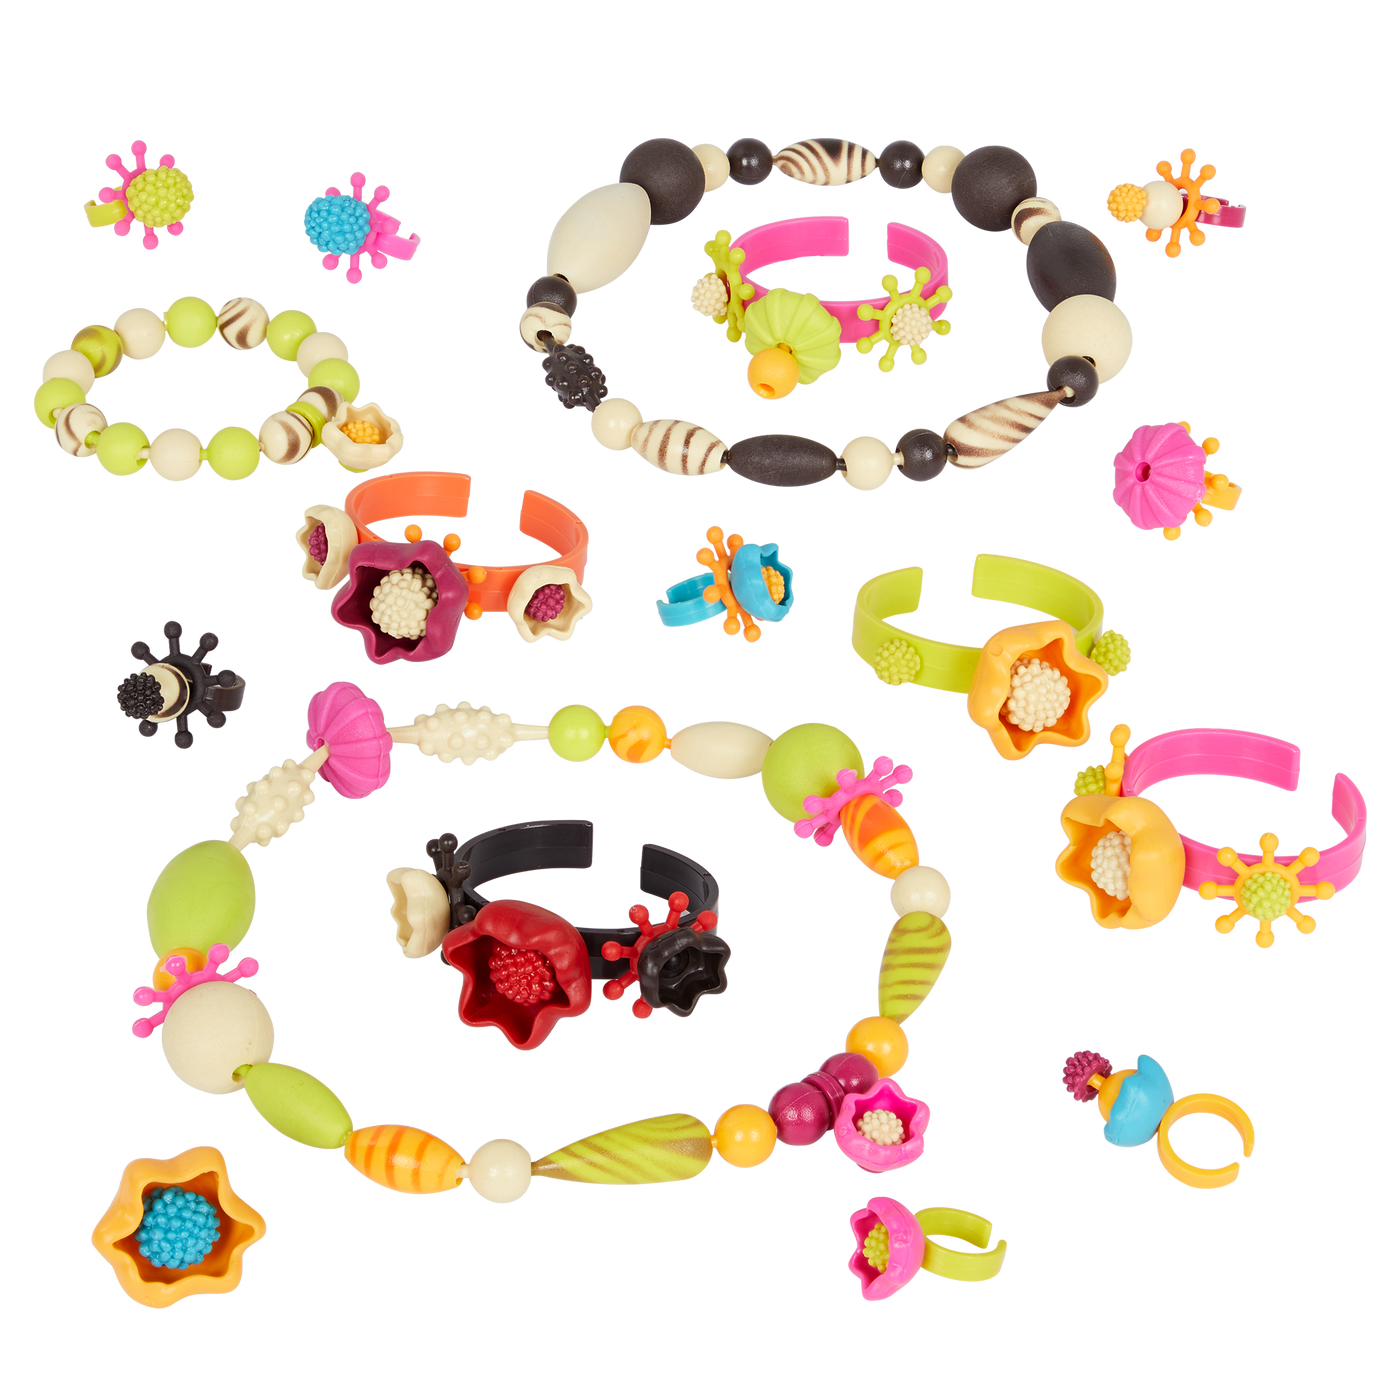 Toy jewelry kit